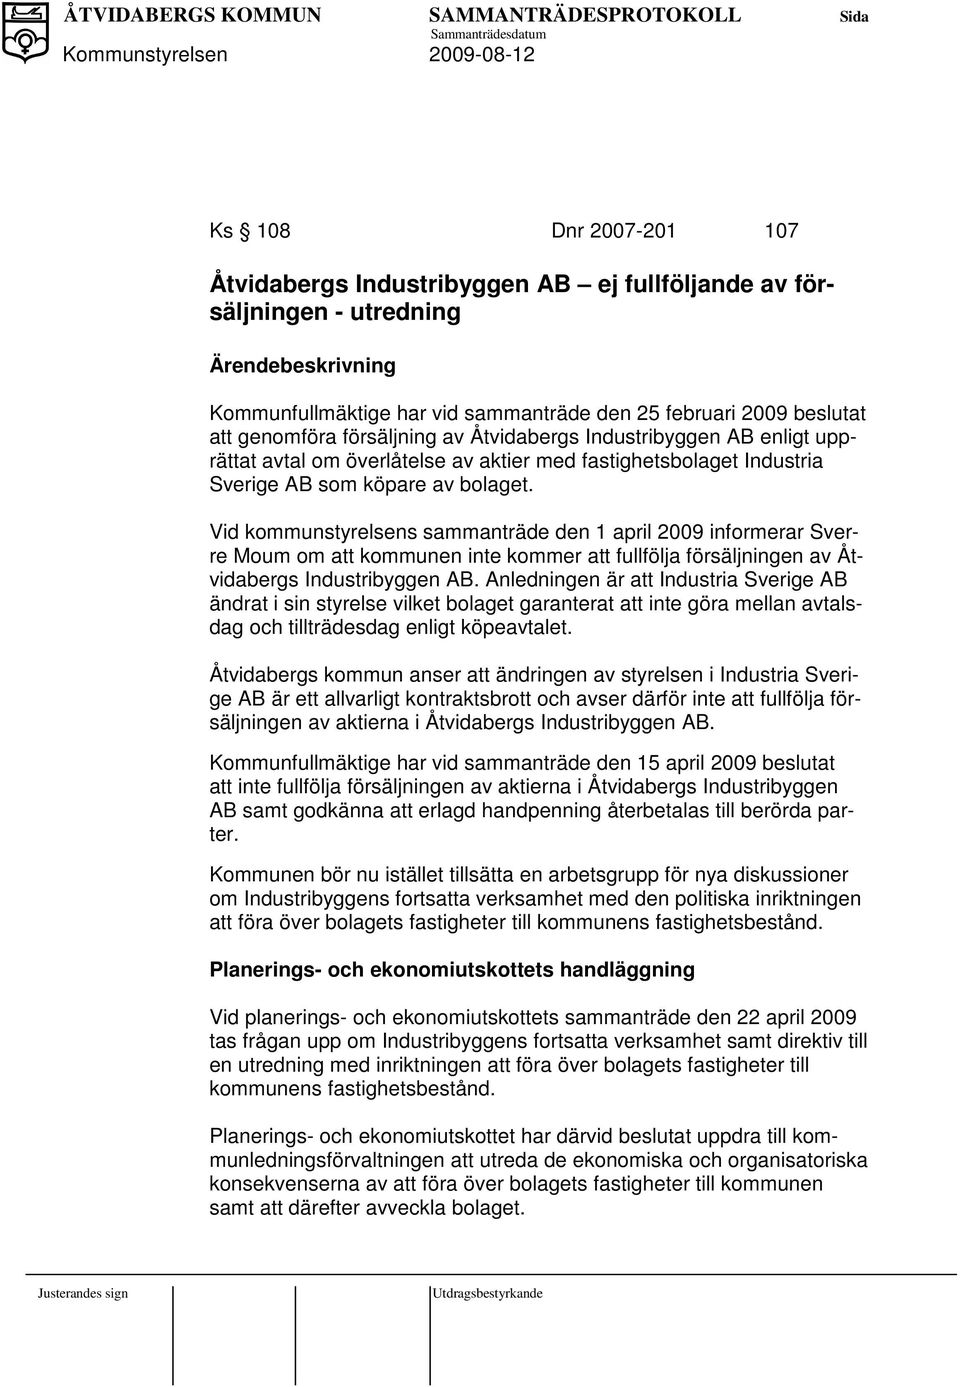 Vid kommunstyrelsens sammanträde den 1 april 2009 informerar Sverre Moum om att kommunen inte kommer att fullfölja försäljningen av Åtvidabergs Industribyggen AB.